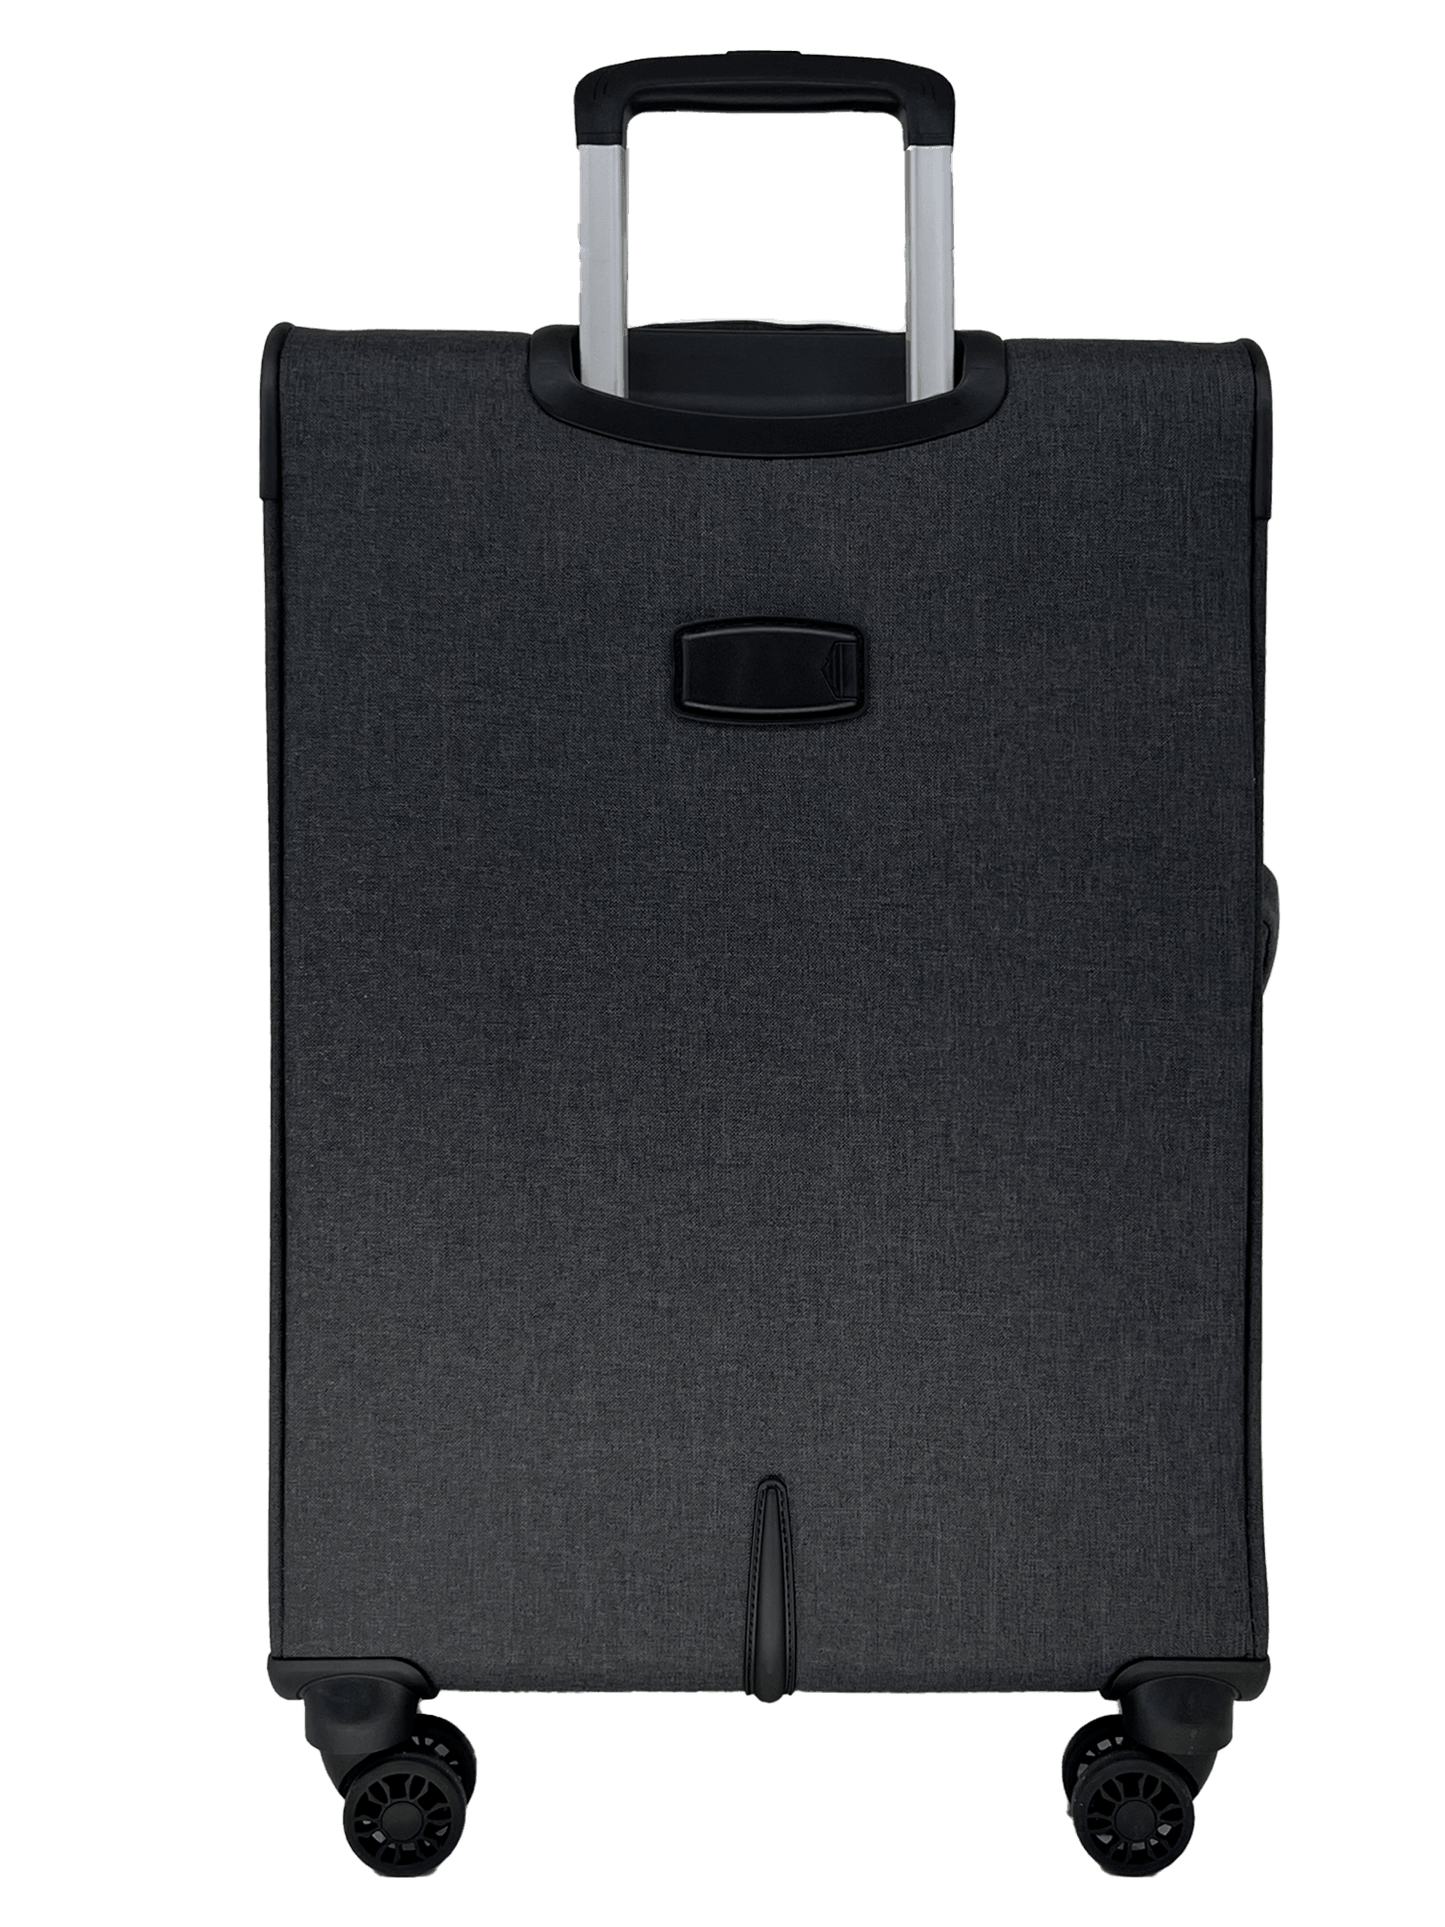 San Michelle Adventurer Pro 78cm Suitcase - San Michelle Bags suitcase nz